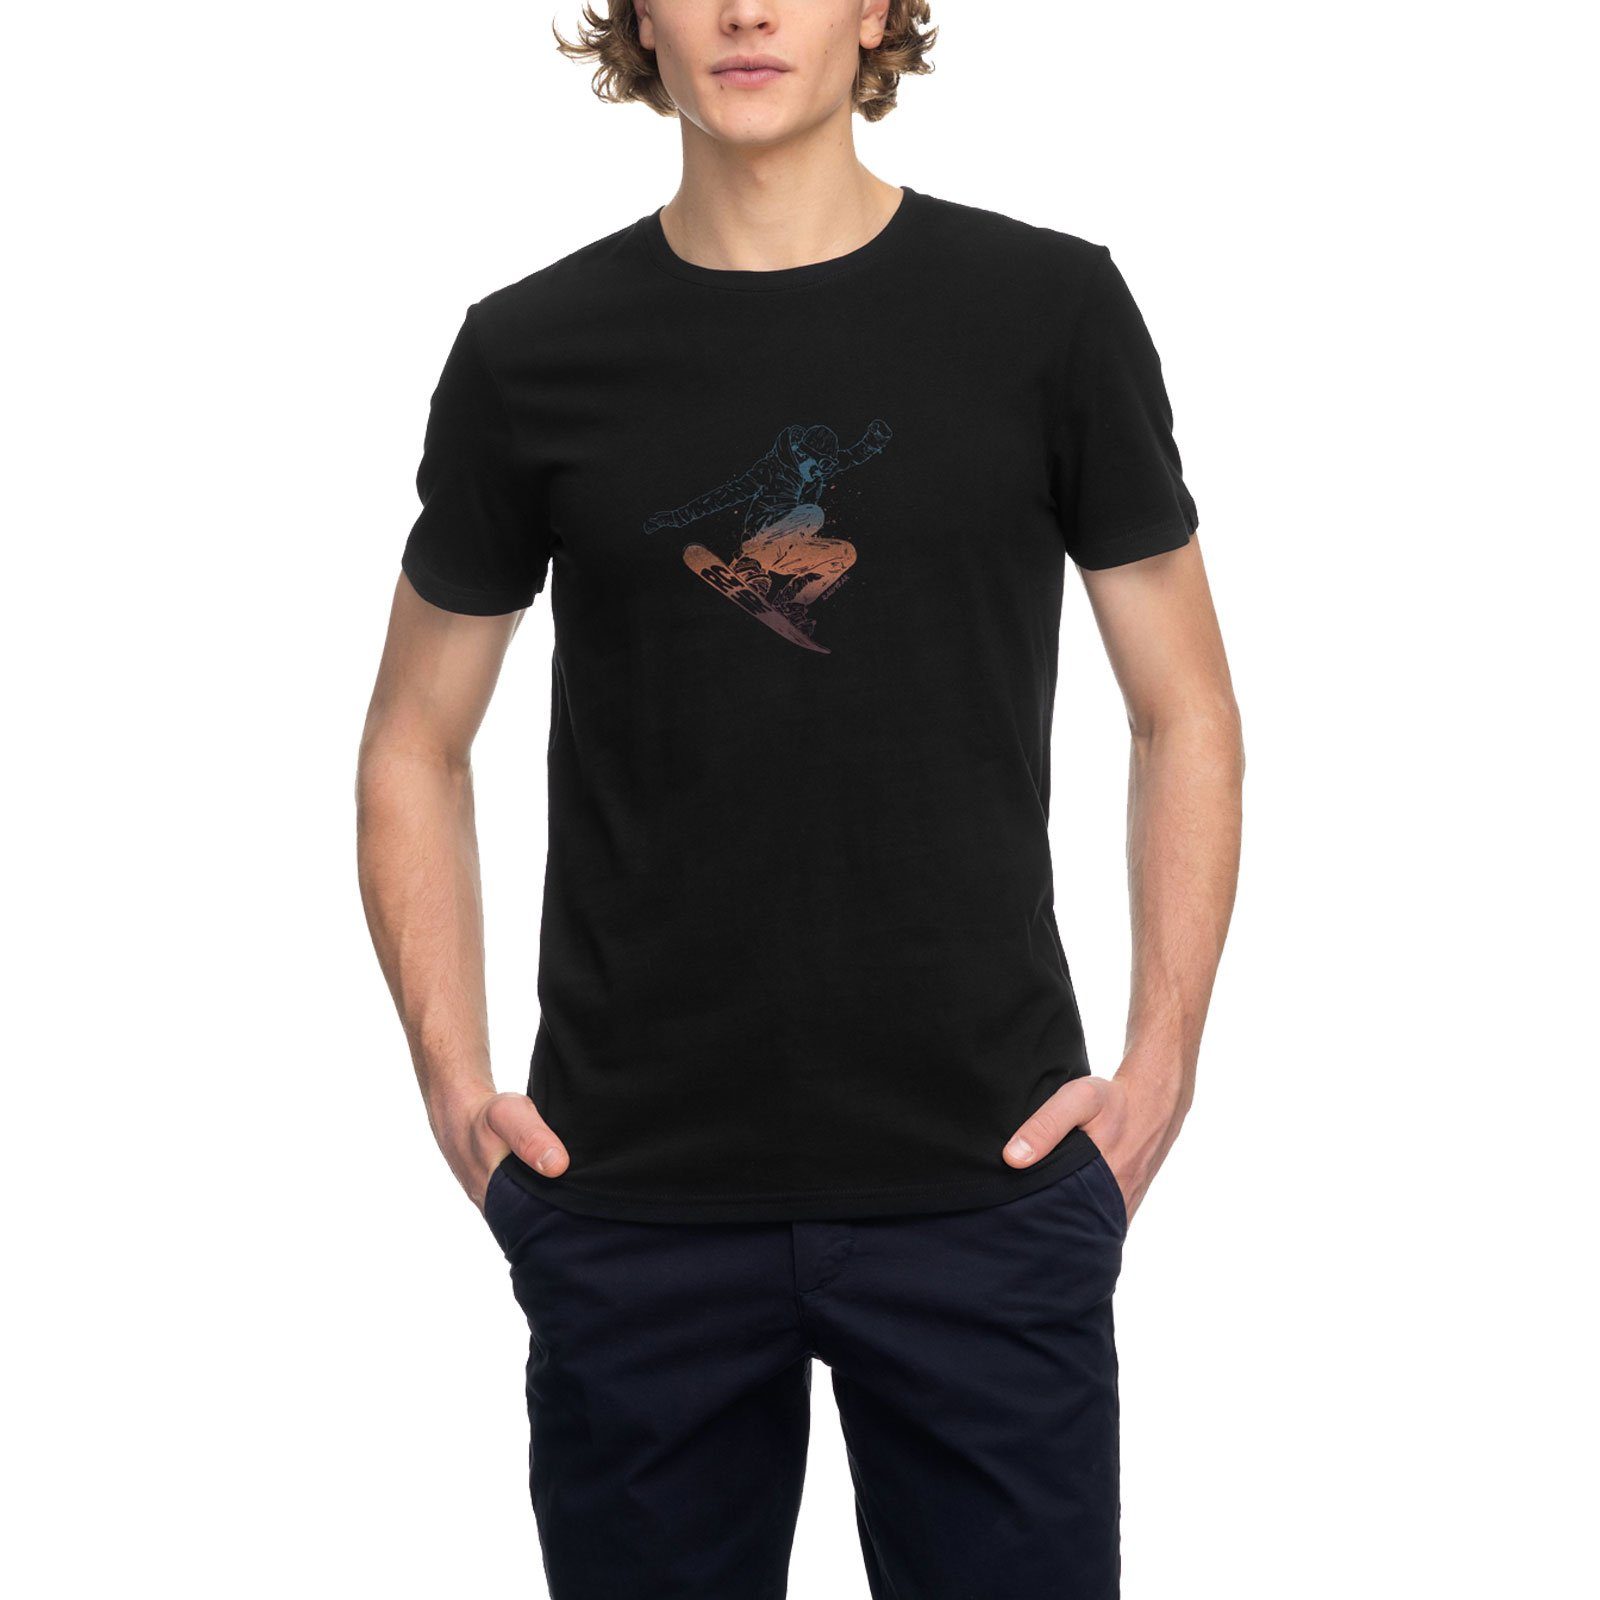 Snowboard-Print T-Shirt Rogger Ragwear coolem mit 1010 black